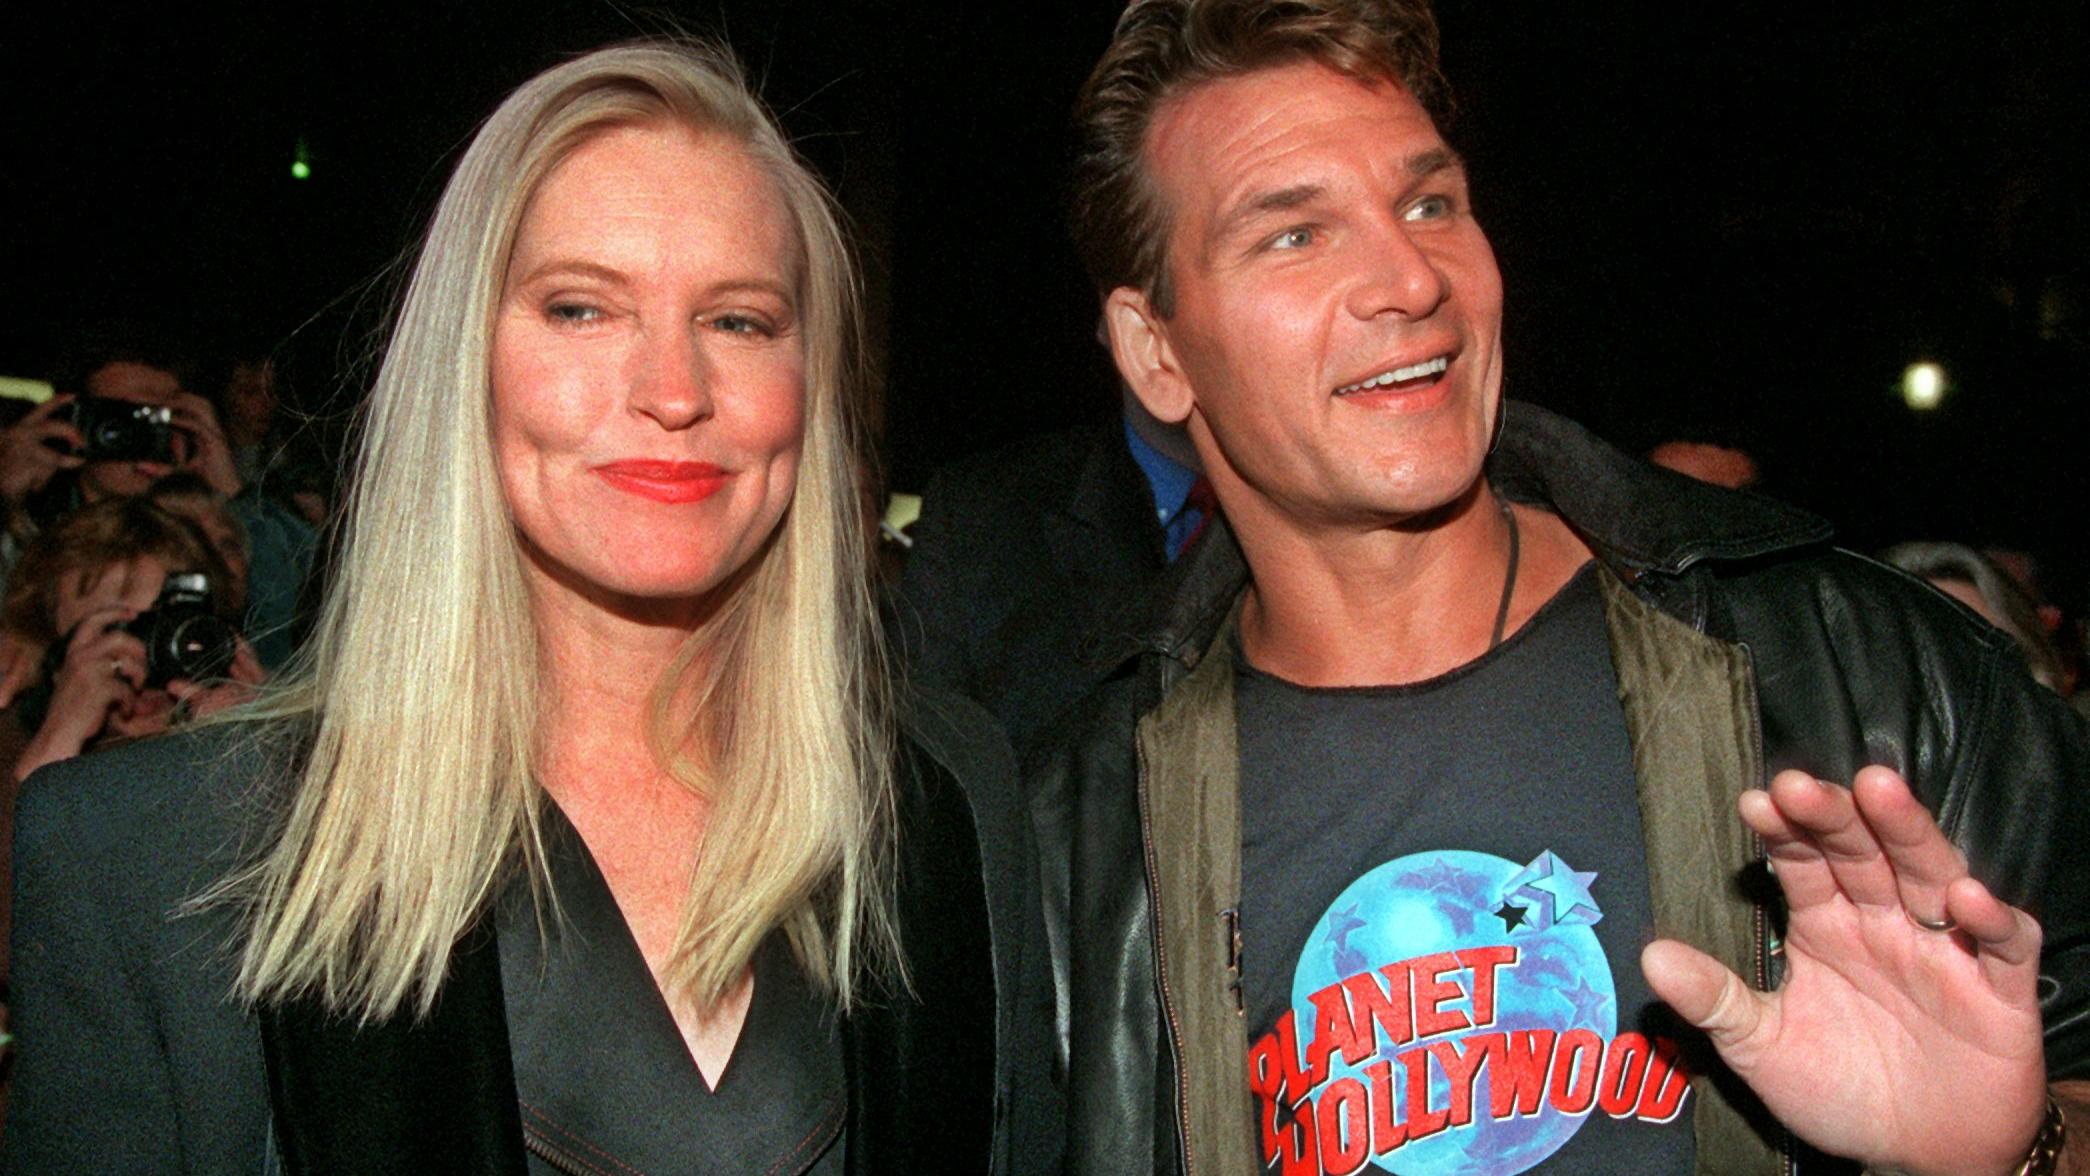 ARCHIV - Der US-Schauspieler Patrick Swayze und seine Frau Lisa Niemi kommen zur Eröffnungsfeier des "Planet Hollywood"-Restaurants in Berlin (Archivfoto vom 23.09.1996). Swayze ("Dirty Dancing", "Ghost") ist nach einem fast zweijährigen Kampf gegen 